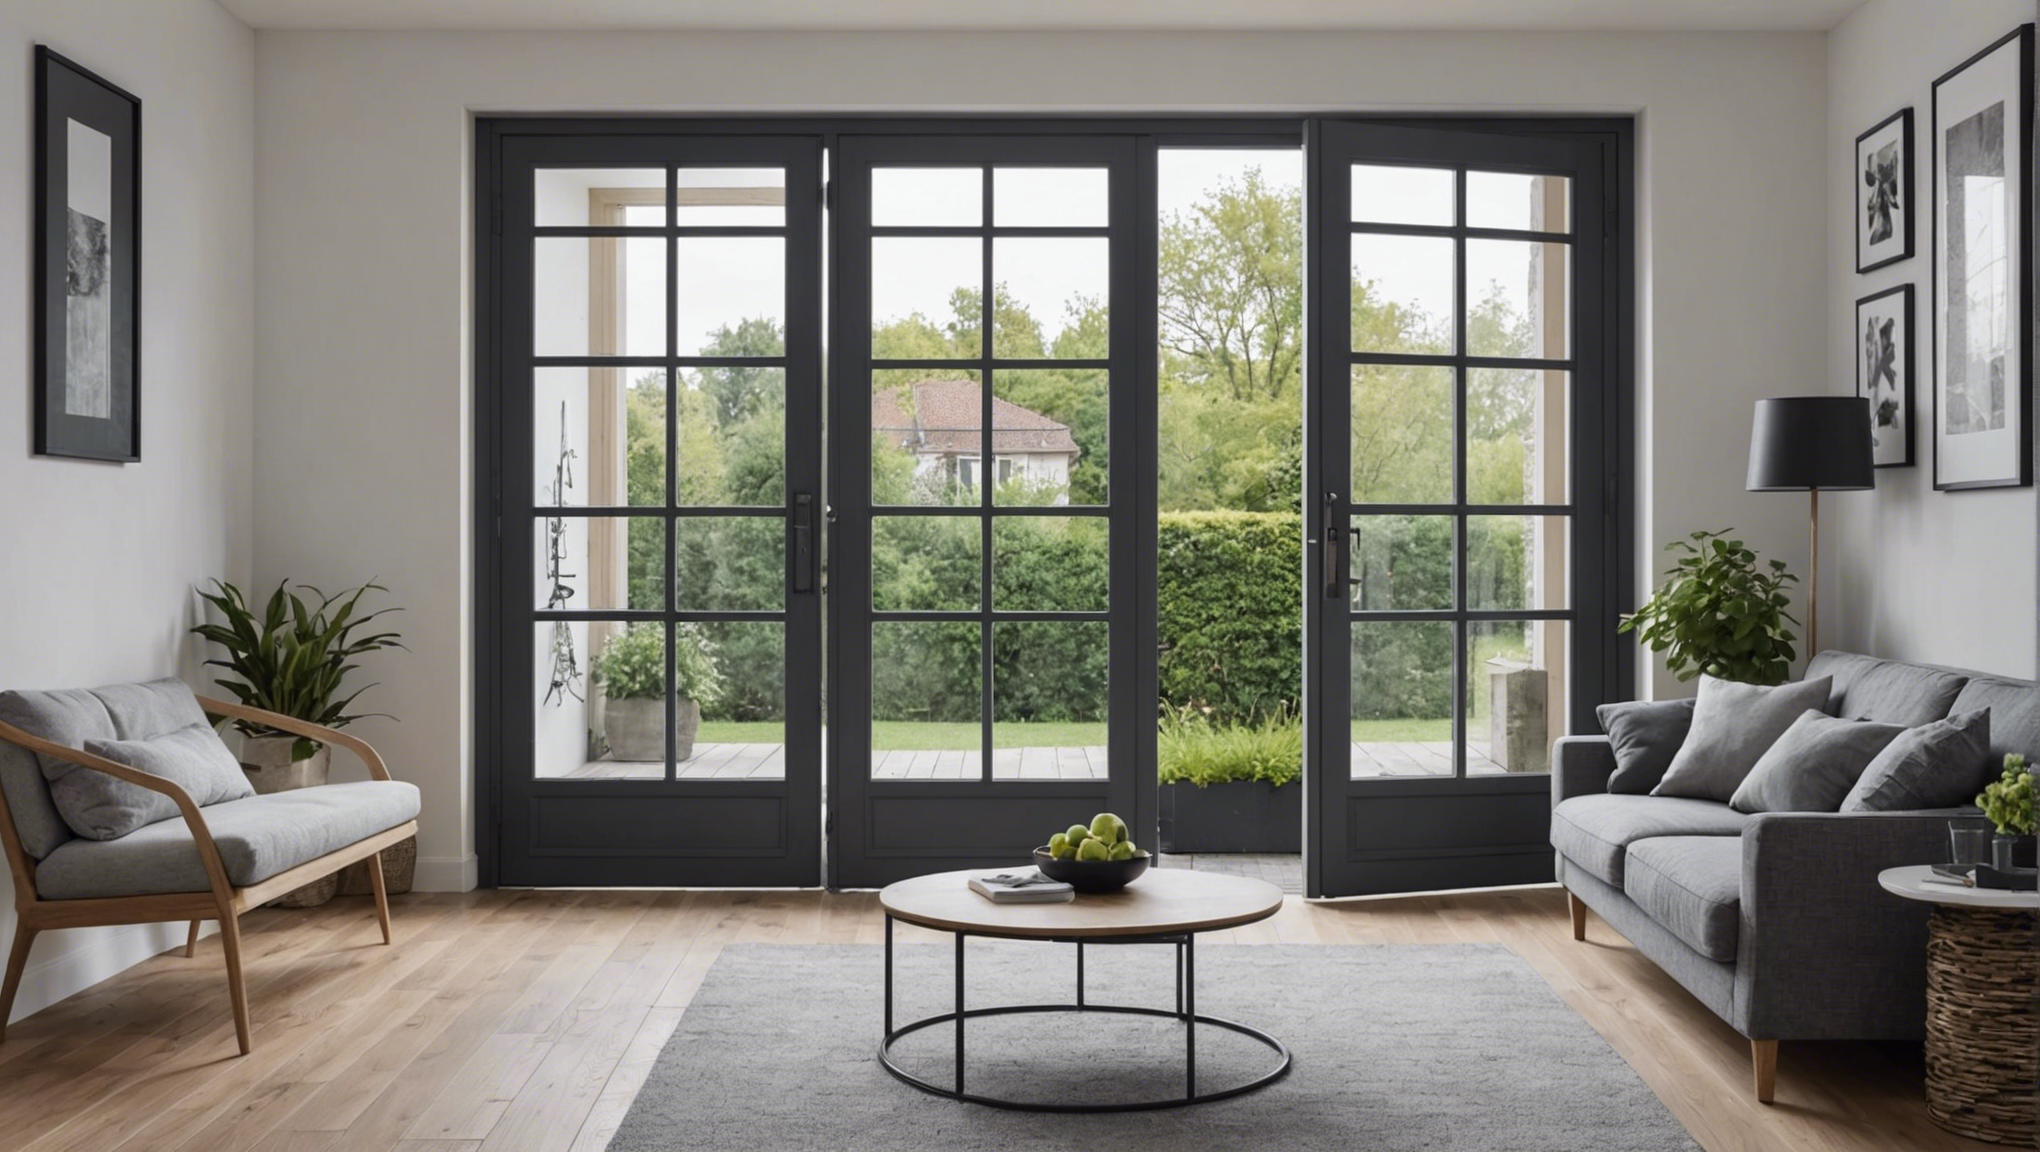 découvrez nos conseils pour choisir les meilleures fenêtres et portes afin d'améliorer l'esthétique et le confort de votre intérieur.